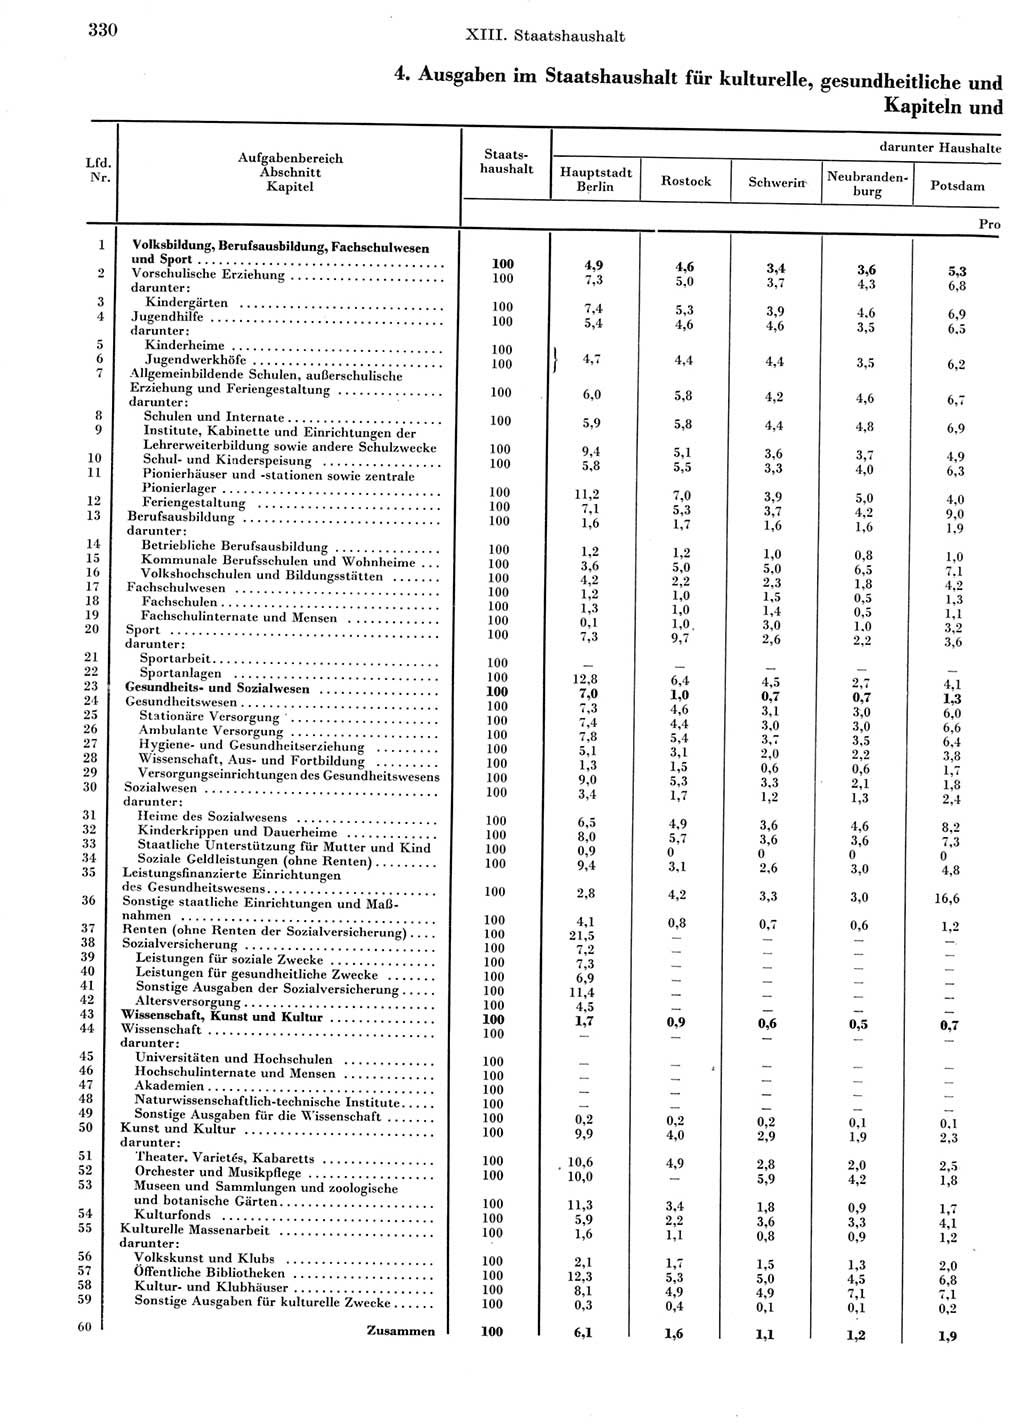 Statistisches Jahrbuch der Deutschen Demokratischen Republik (DDR) 1969, Seite 330 (Stat. Jb. DDR 1969, S. 330)